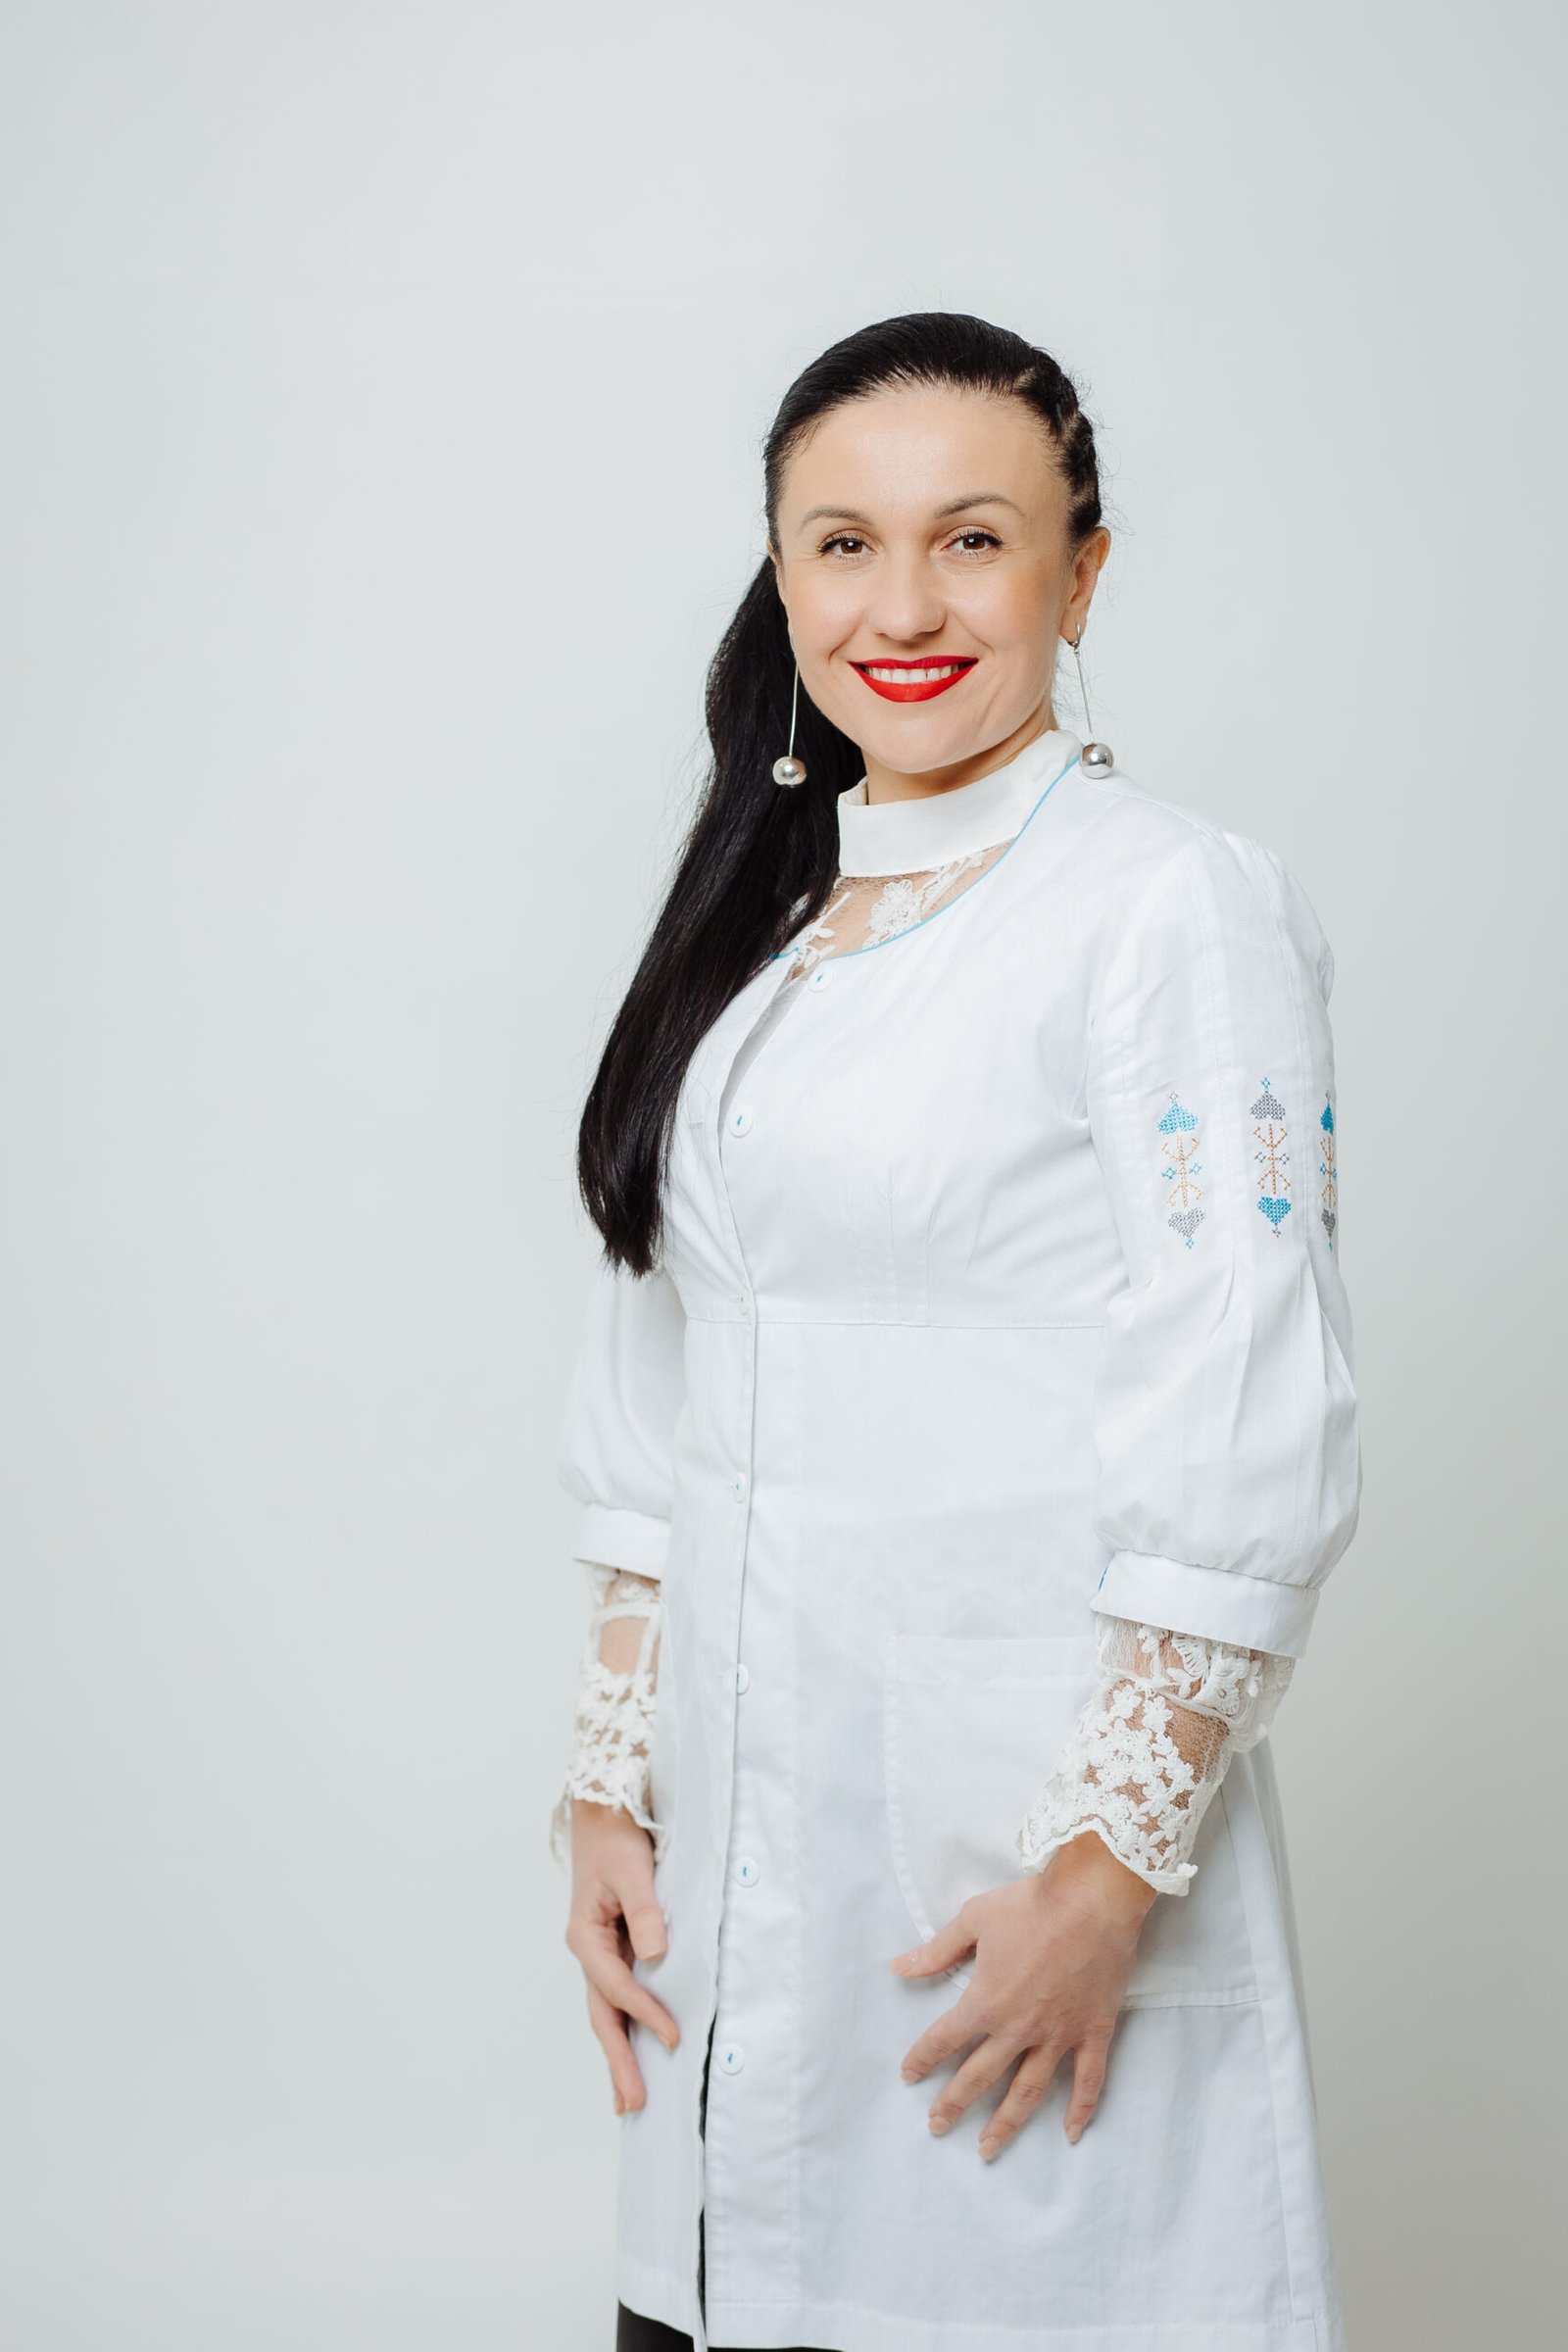 Maryana Ivanivna Borsenko - Vitamínové lekárske centrum